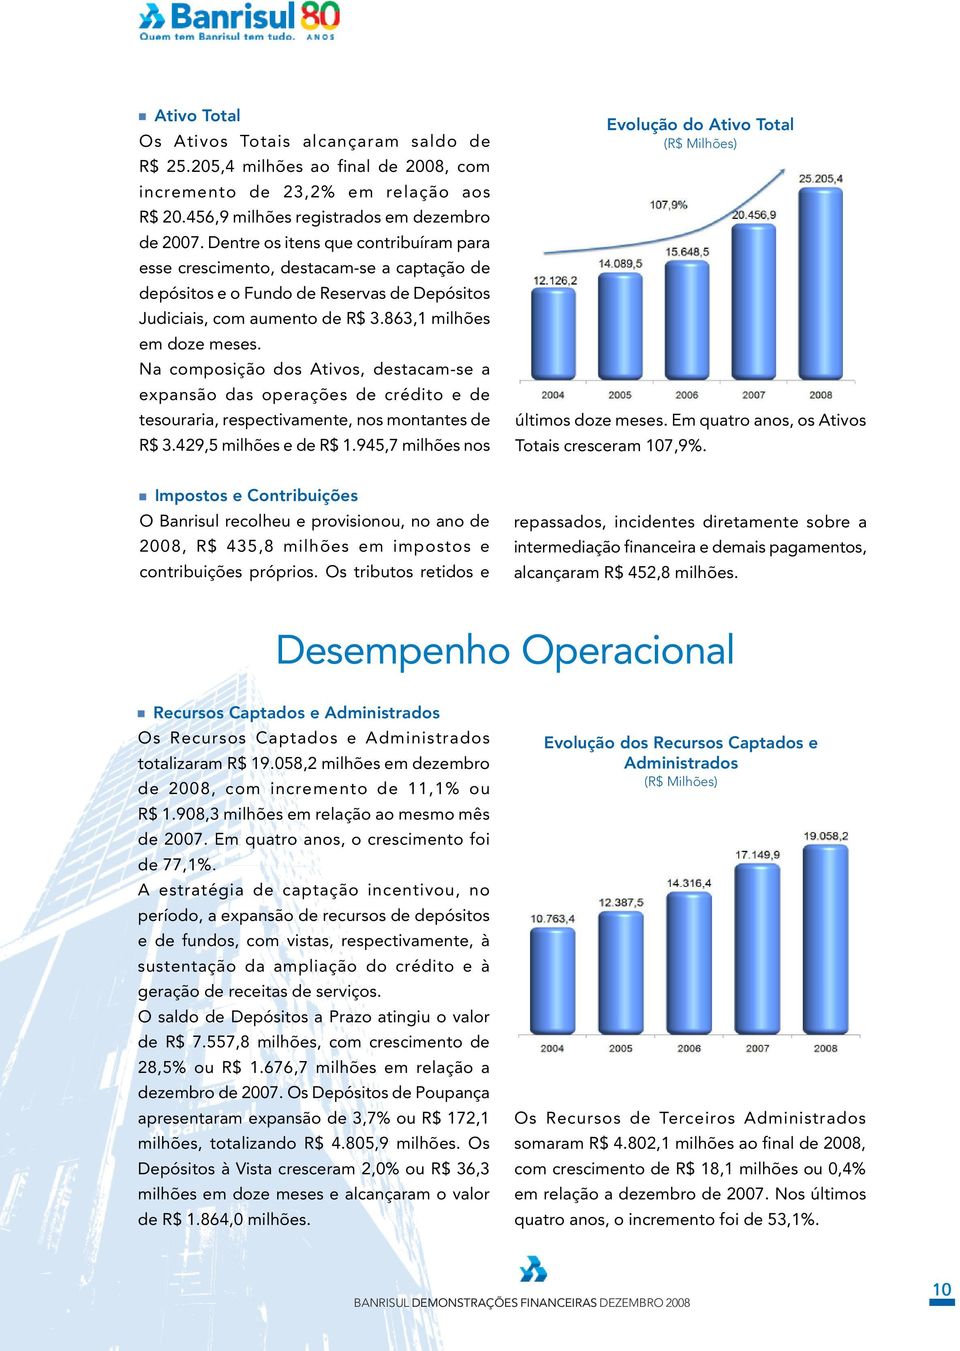 Na composição dos Ativos, destacam-se a expansão das operações de crédito e de tesouraria, respectivamente, nos montantes de R$ 3.429,5 milhões e de R$ 1.